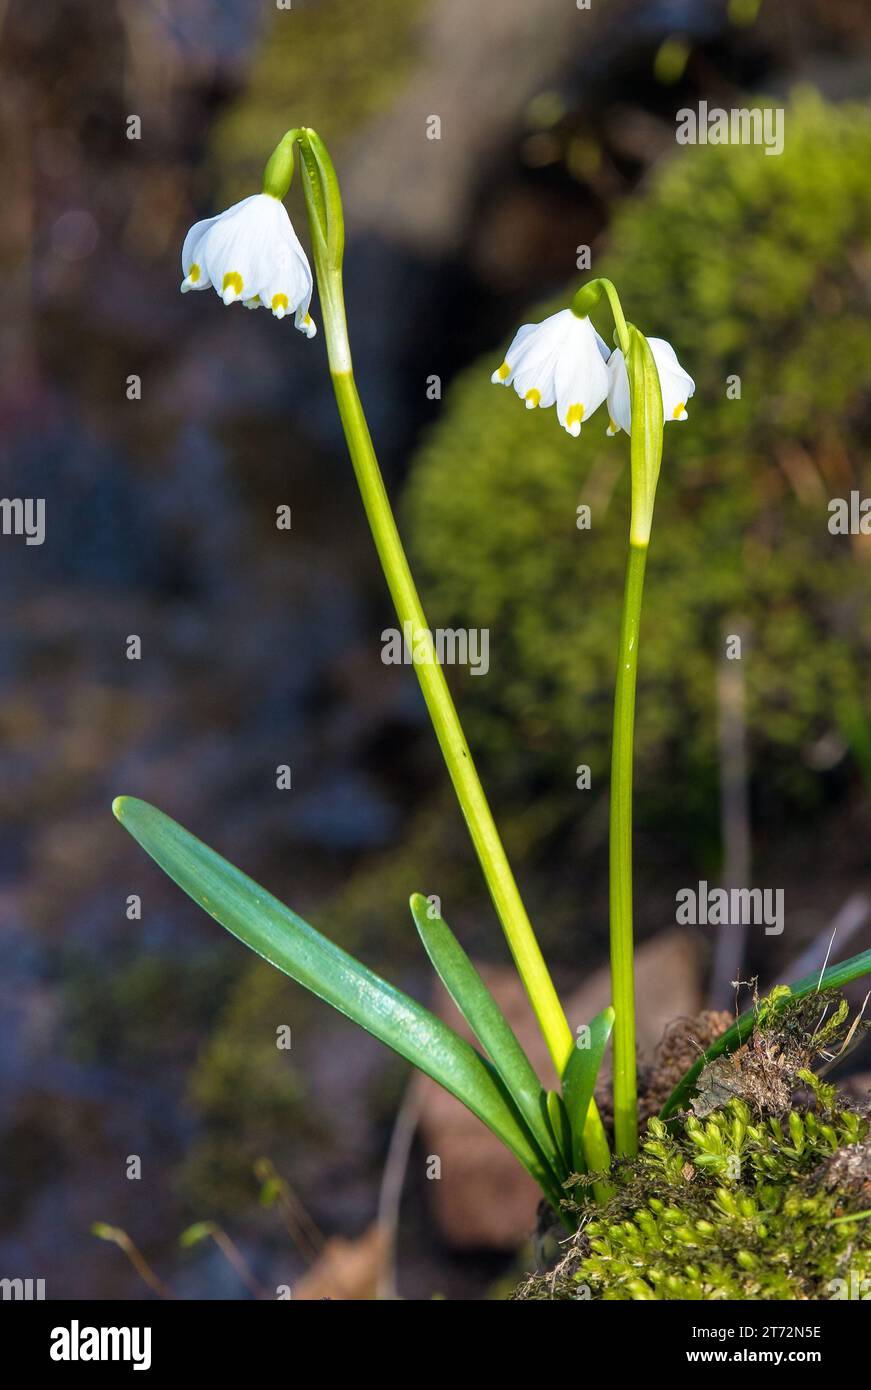 fiori primaverili di fiocchi di neve in latino leucojum vernum Foto Stock